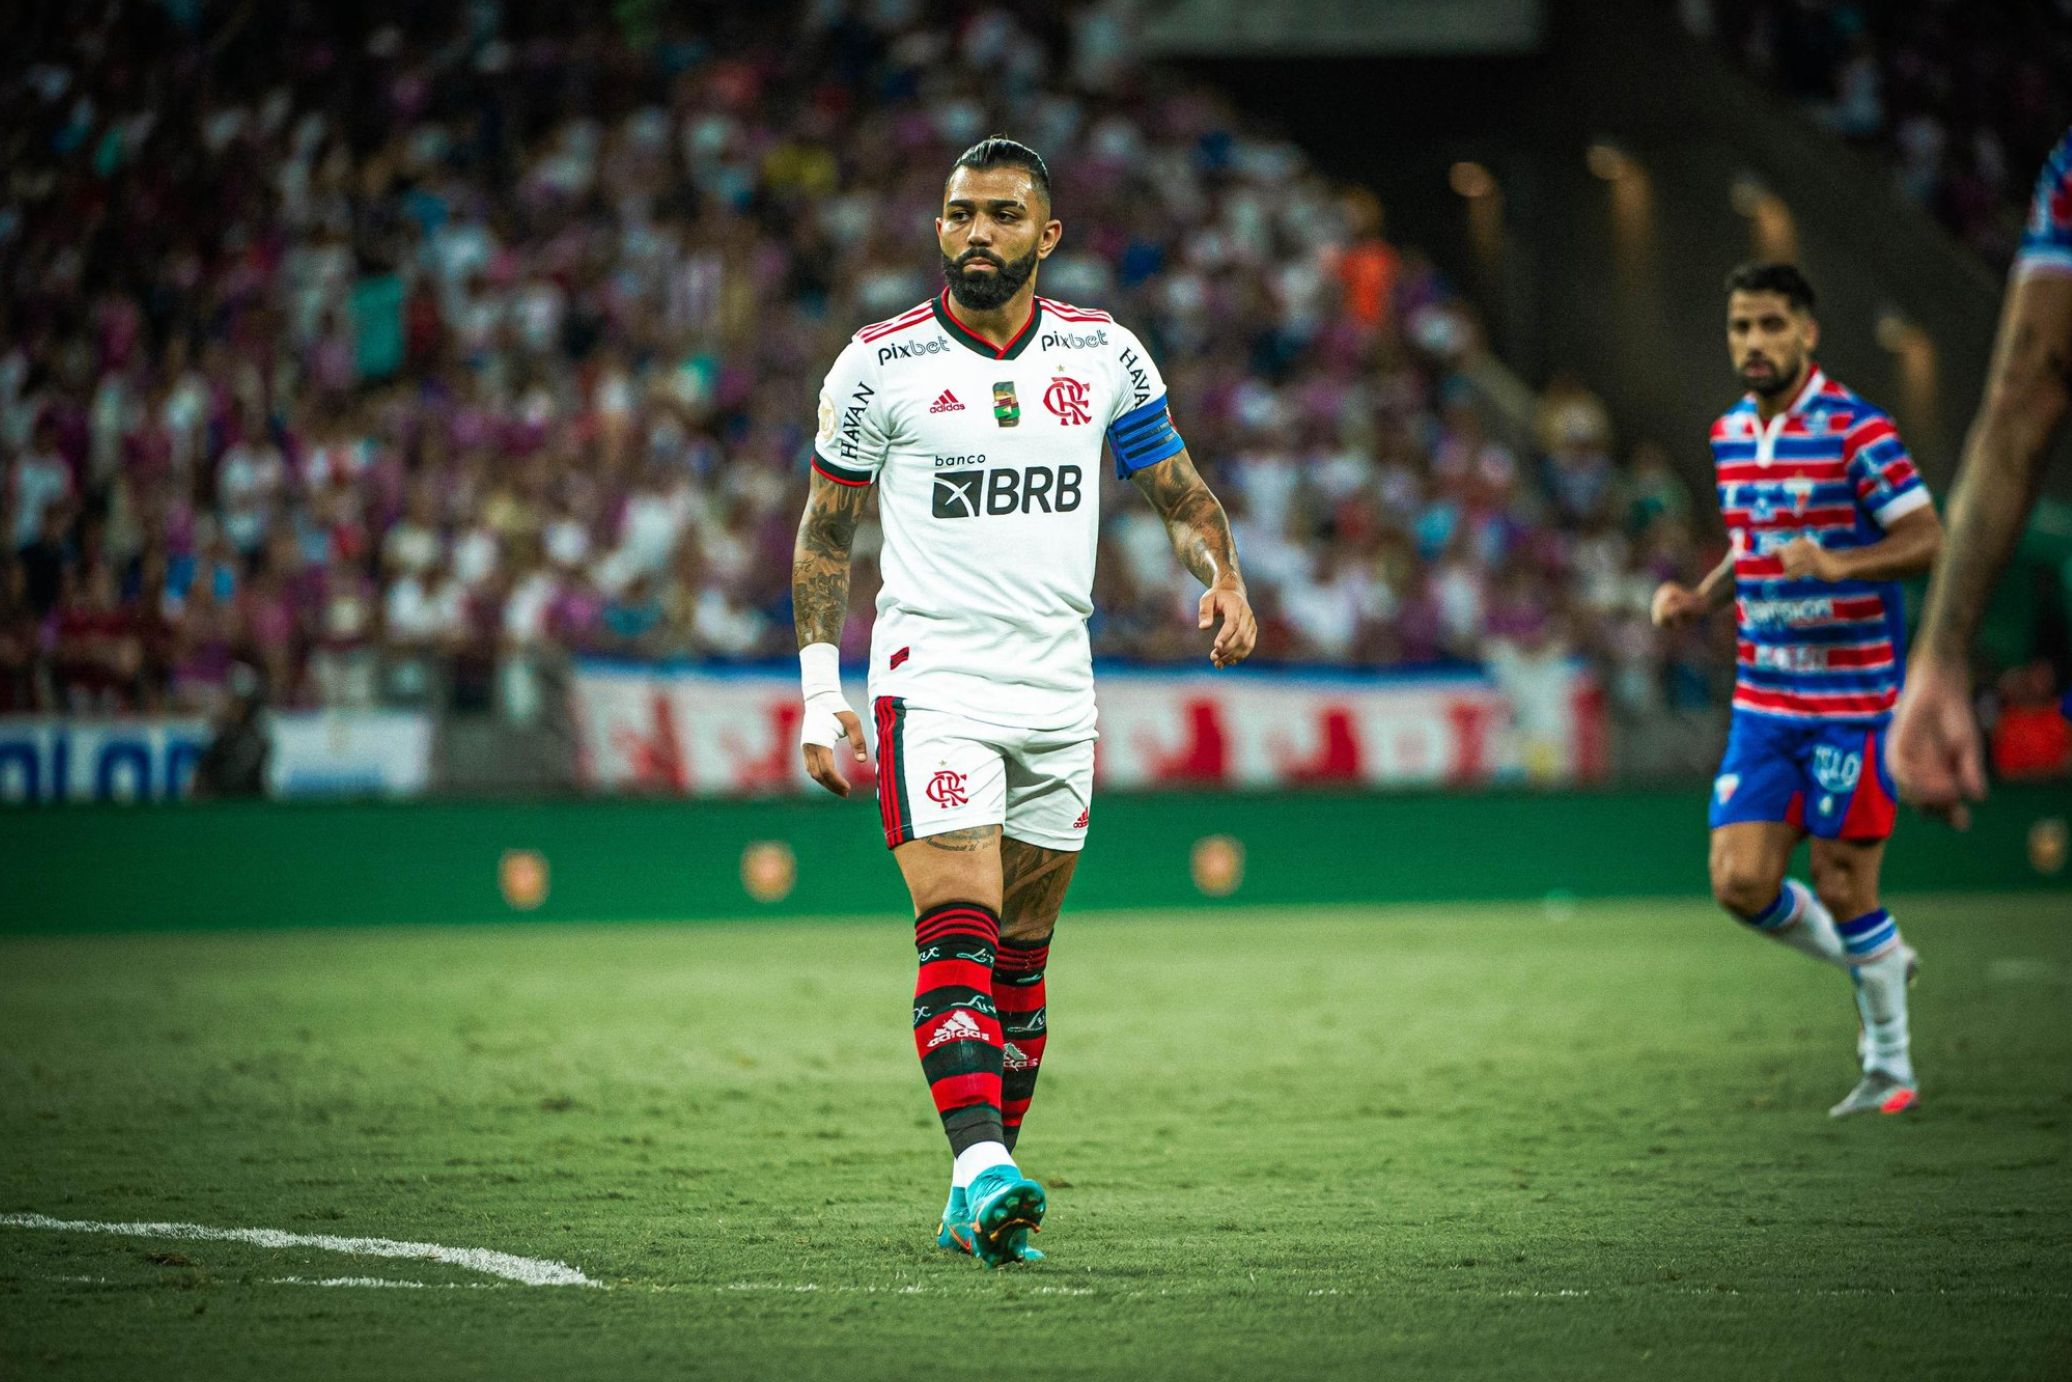 Análise - Após jogo ruim e clara dependência a Renato, a pergunta é: qual  Corinthians veremos jogar agora? - Gazeta Esportiva